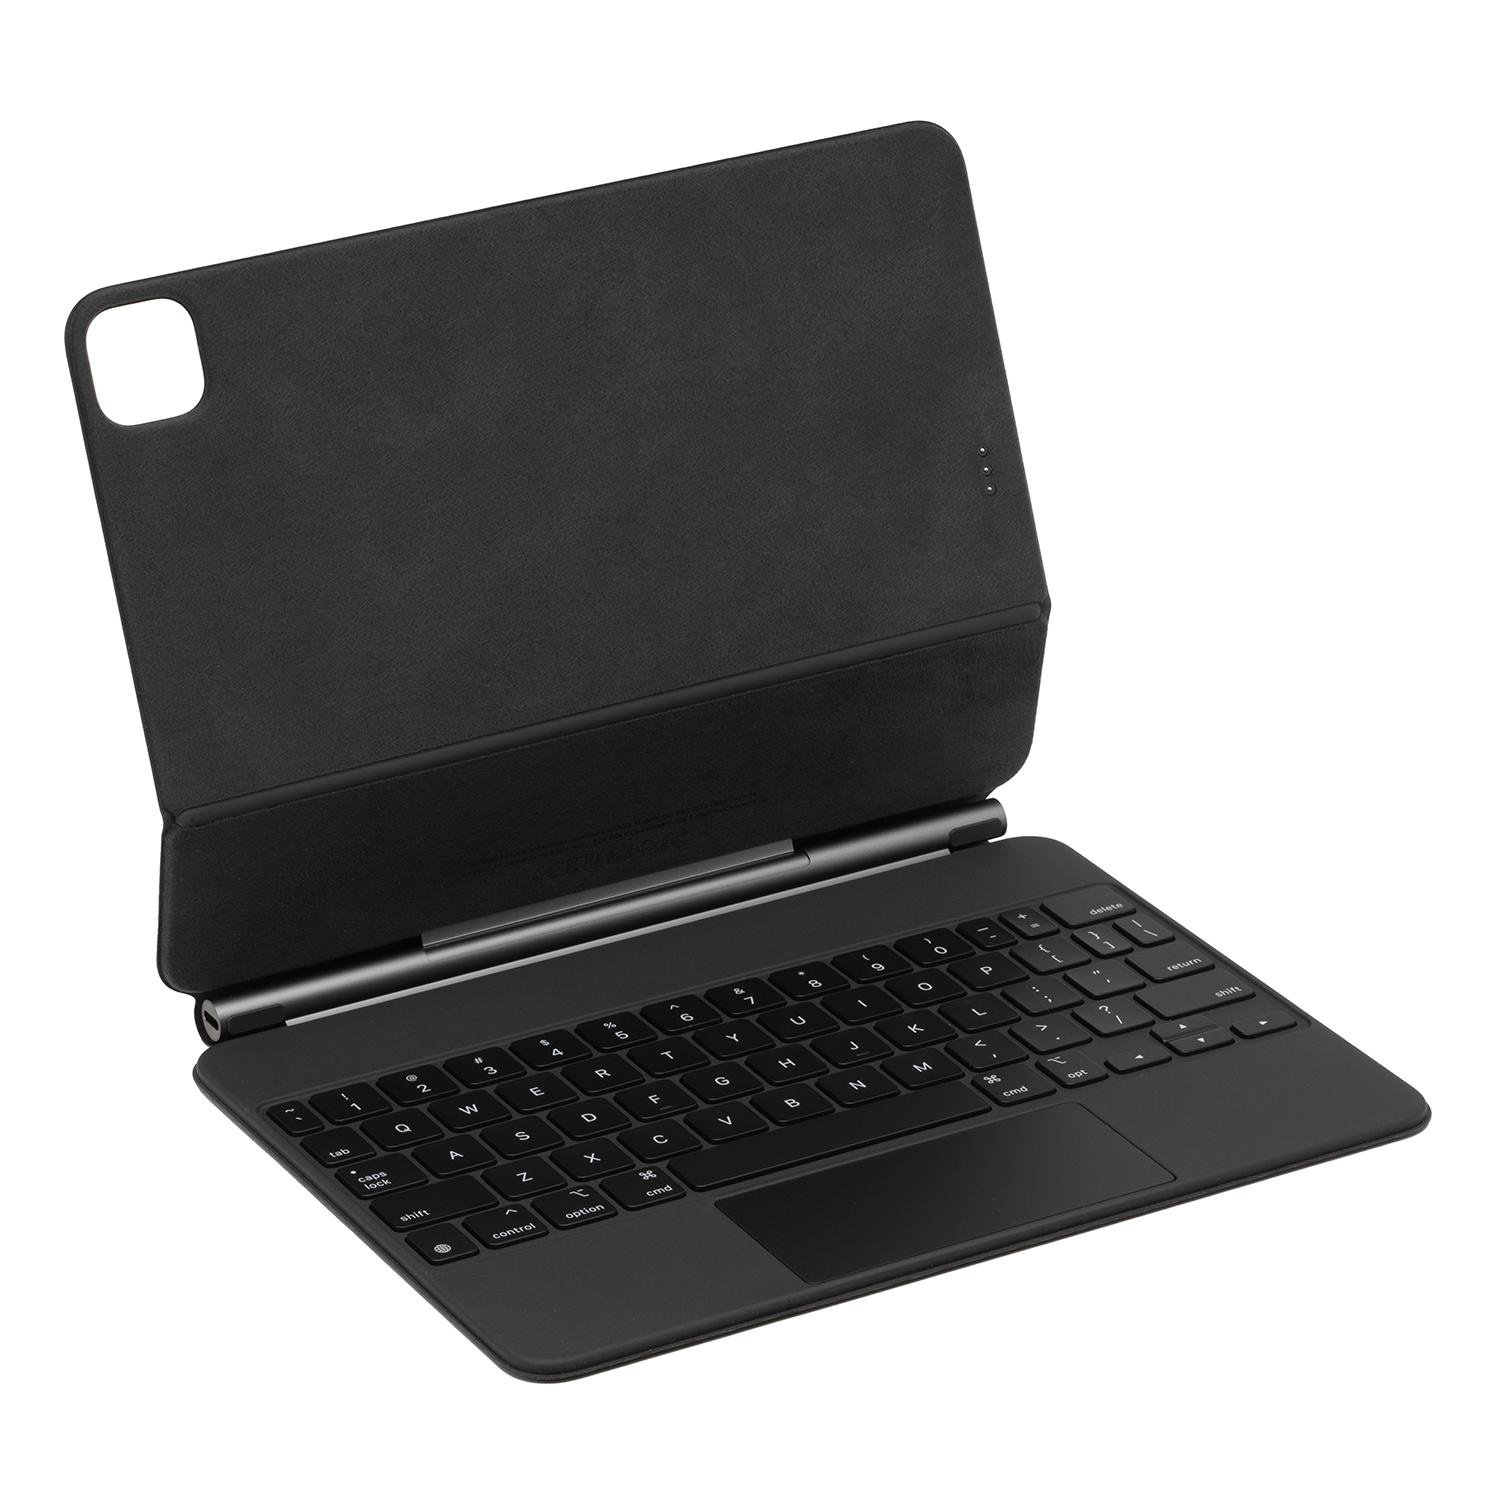 Apple MXQT2LL/A Magic Keyboard with Trackpad for... at MacSales.com